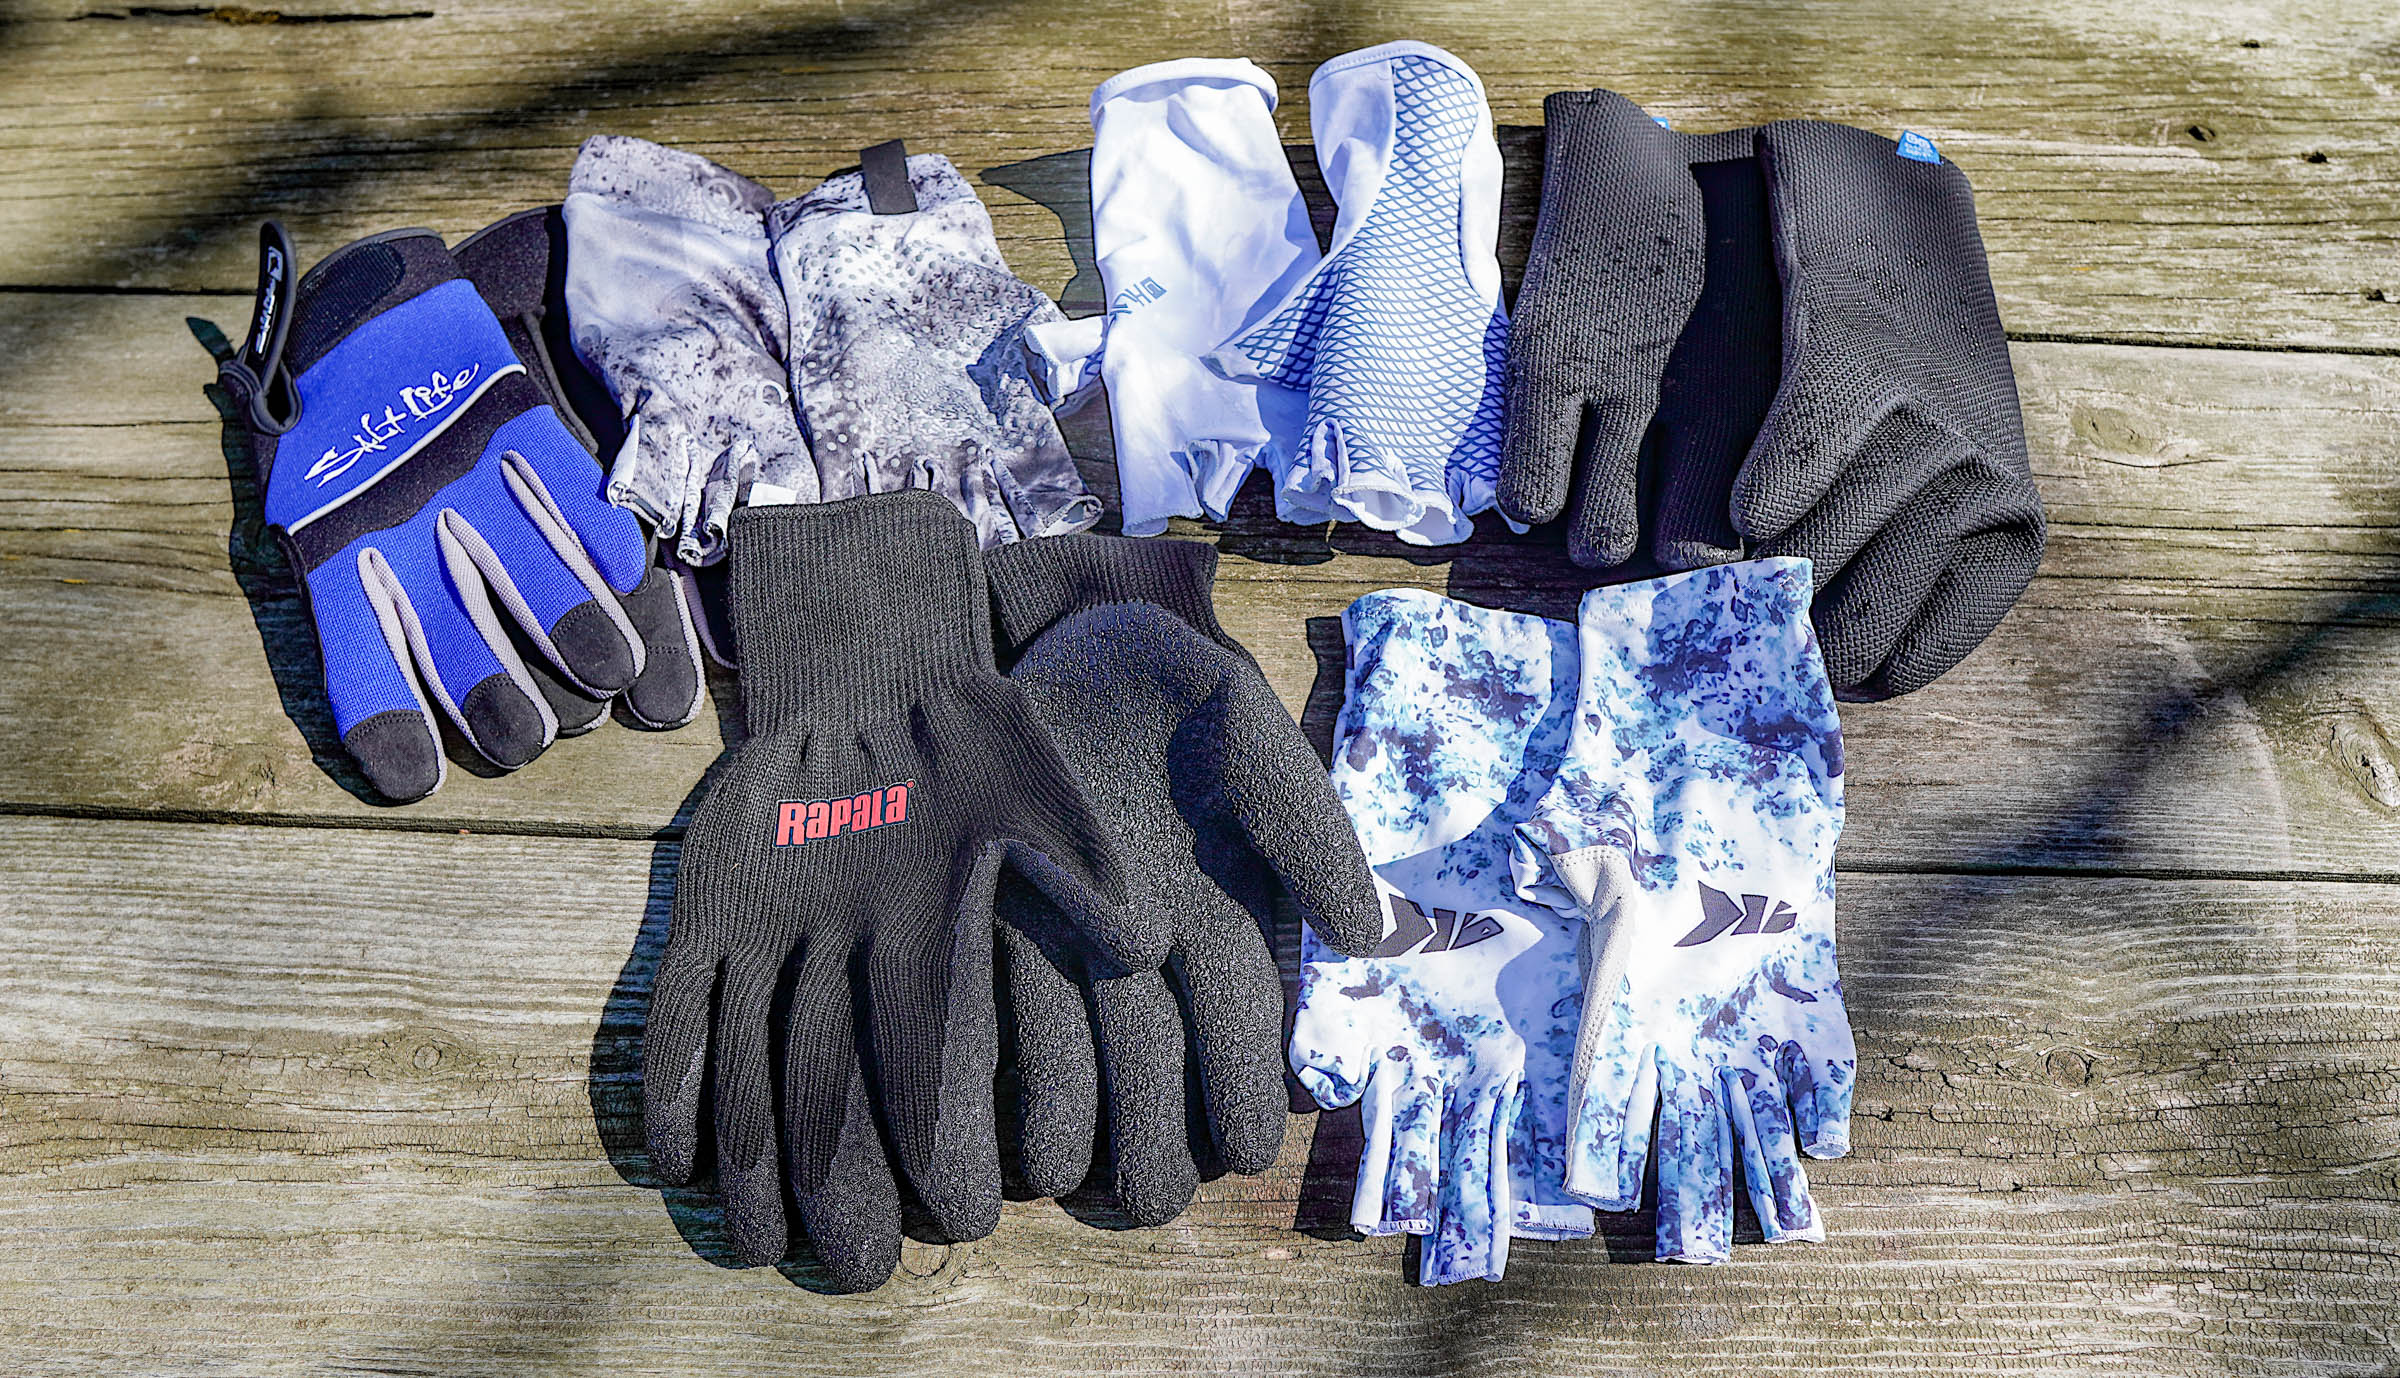 Winter Neoprene Fishing Gloves Anti Slip Fly Fishing Gloves Keep